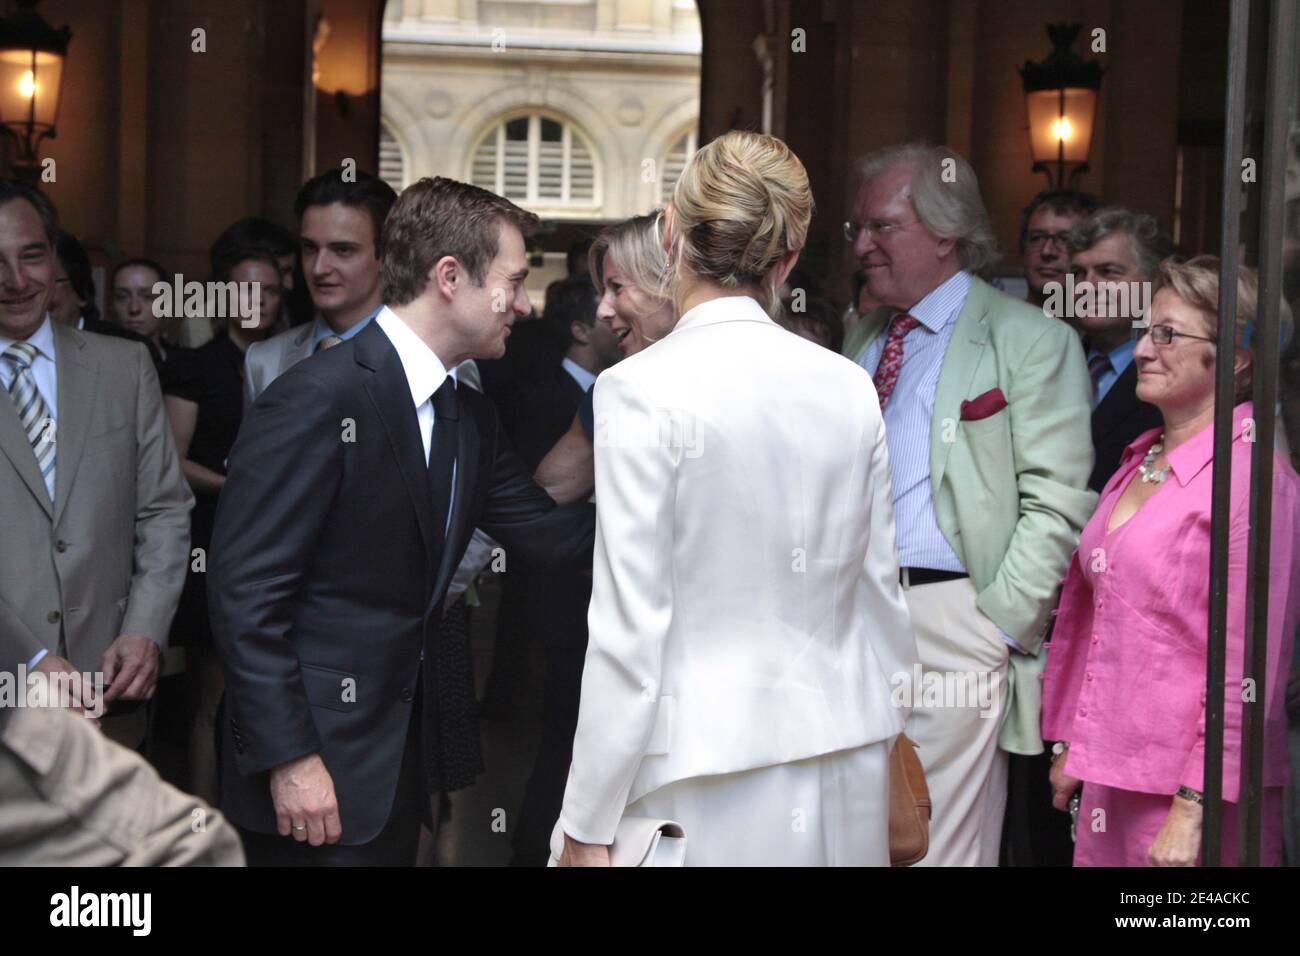 Laurence Ferrari et Renaud Capucon quittent la Mairie du XVIeme arrondissement de Paris le 3 juillet 2009, apres leur mariage civile. Foto di ABACAPRESS.COM Foto Stock